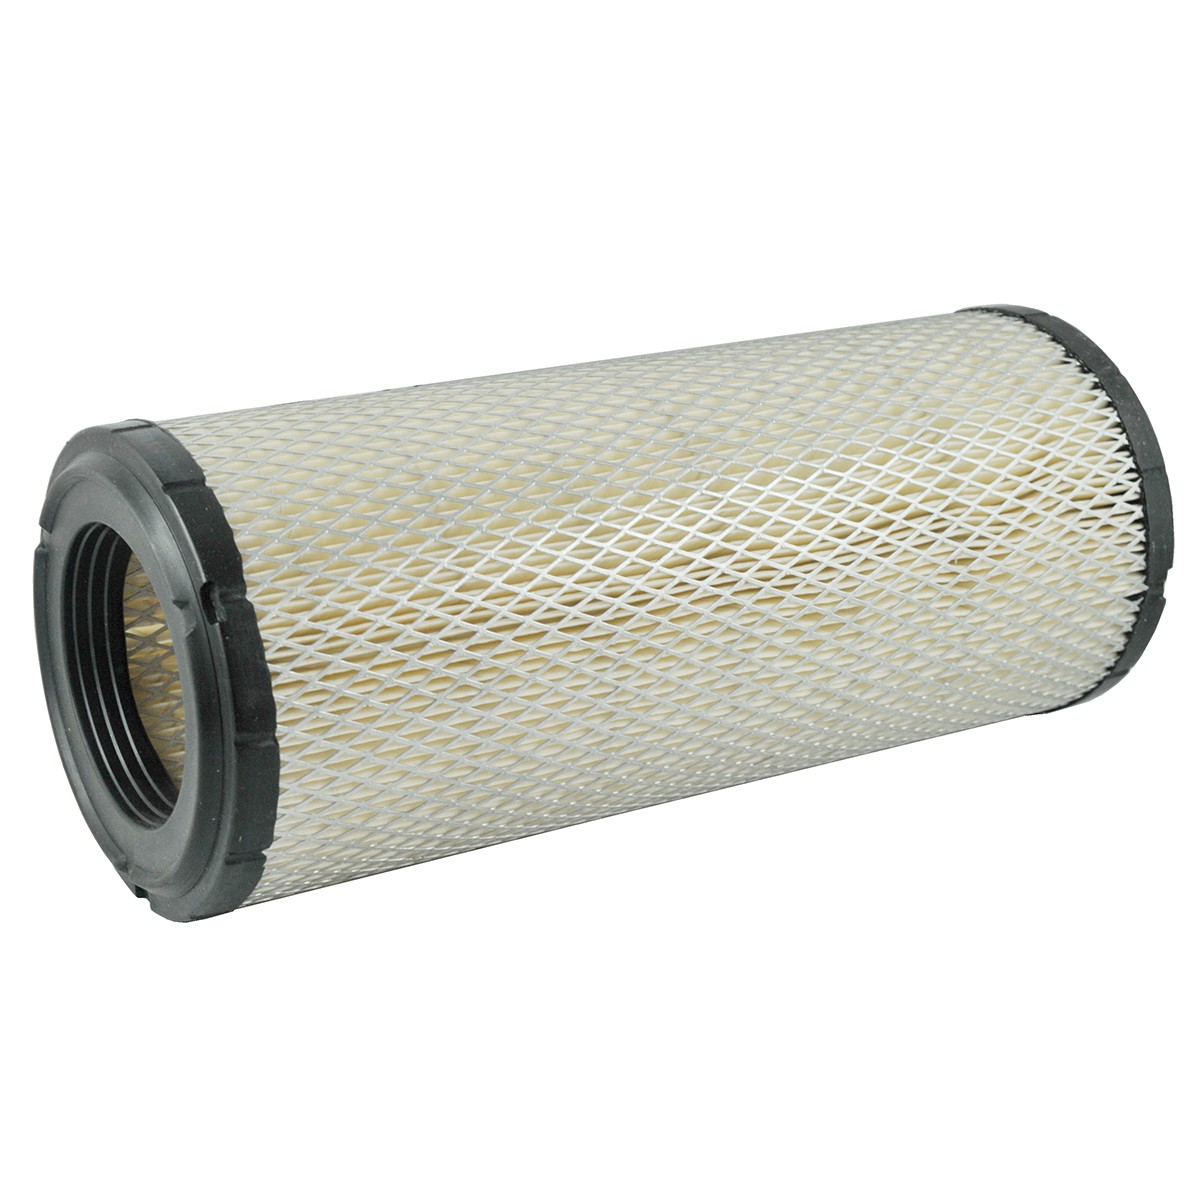 Vzduchový filtr Kubota M / 321 x 137 mm / 59800-26110 / 6-01-102-07 / SA 16683